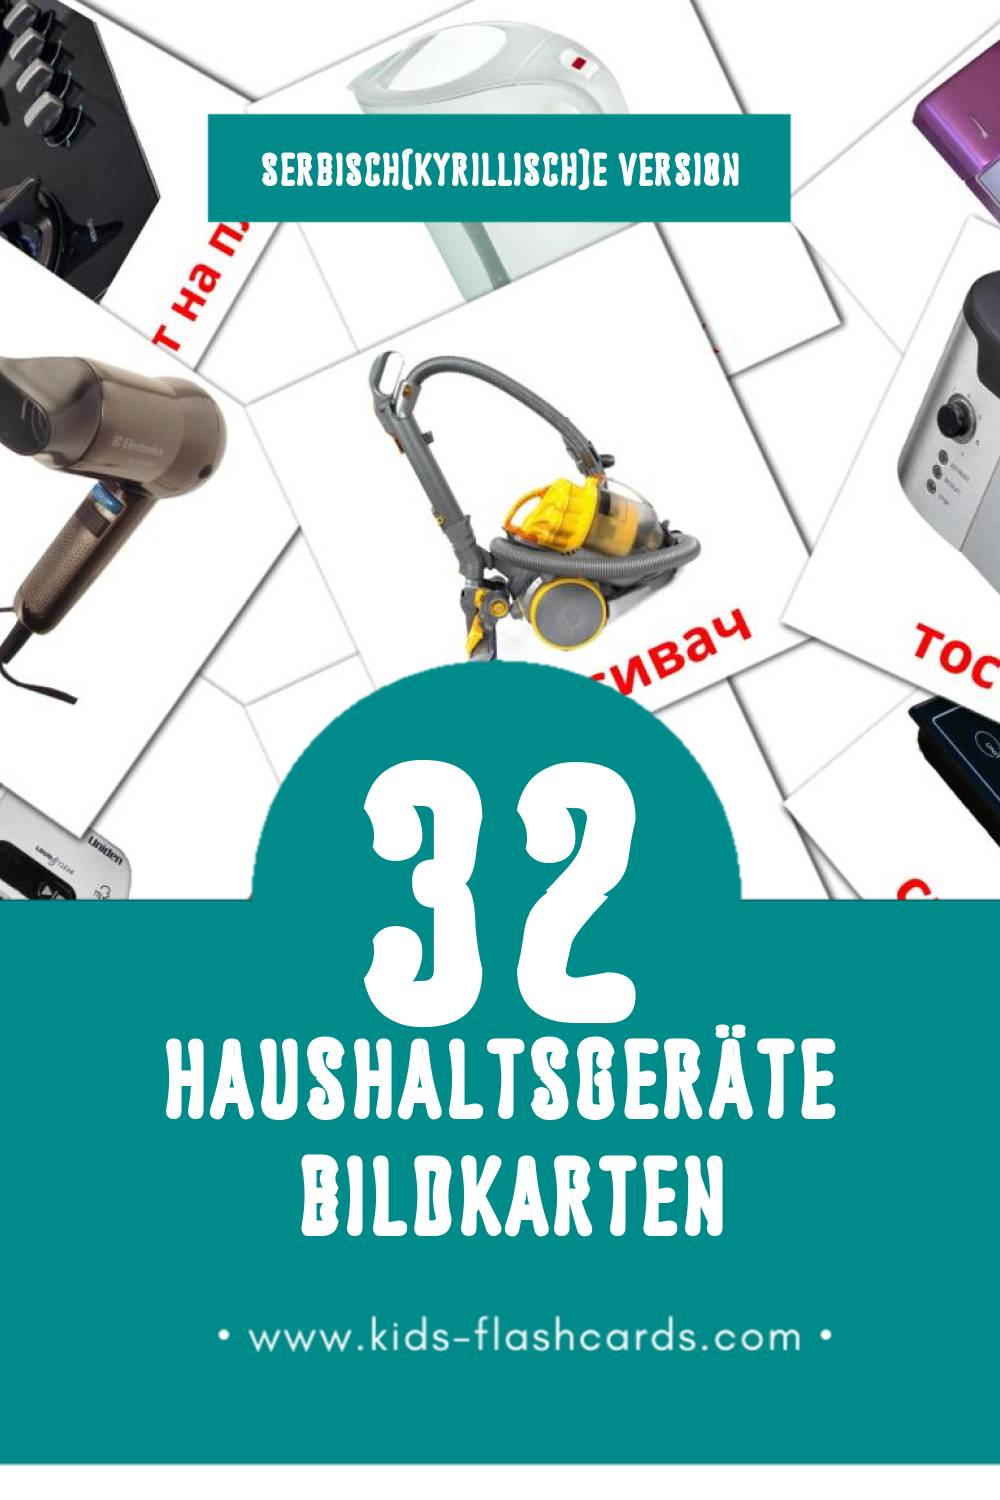 Visual апарати за домаћинство Flashcards für Kleinkinder (60 Karten in Serbisch(kyrillisch))